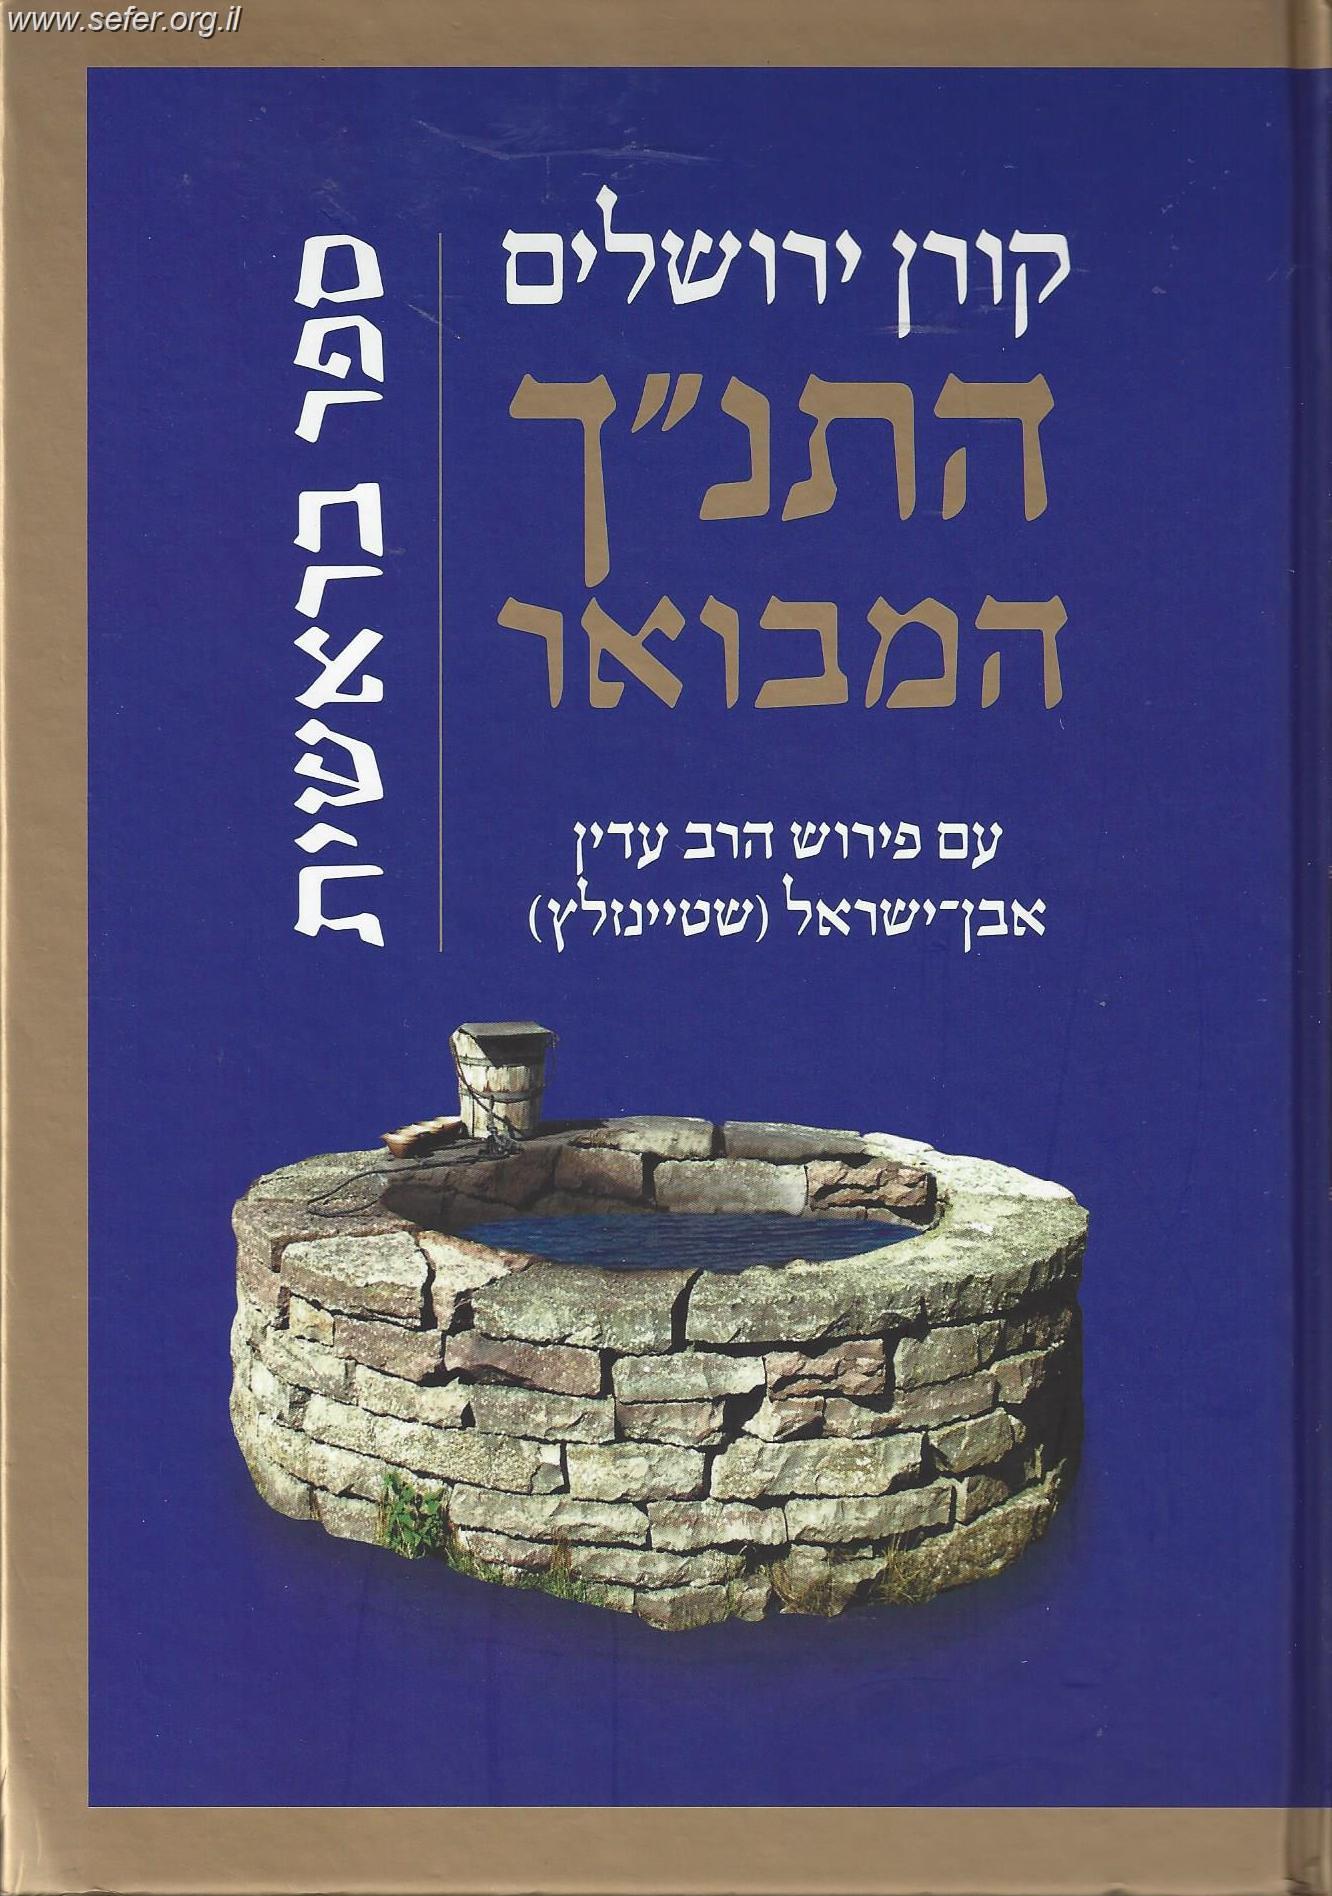 התנ"ך המבואר - שמות / הרב עדין אבן ישראל (שטיינזלץ)